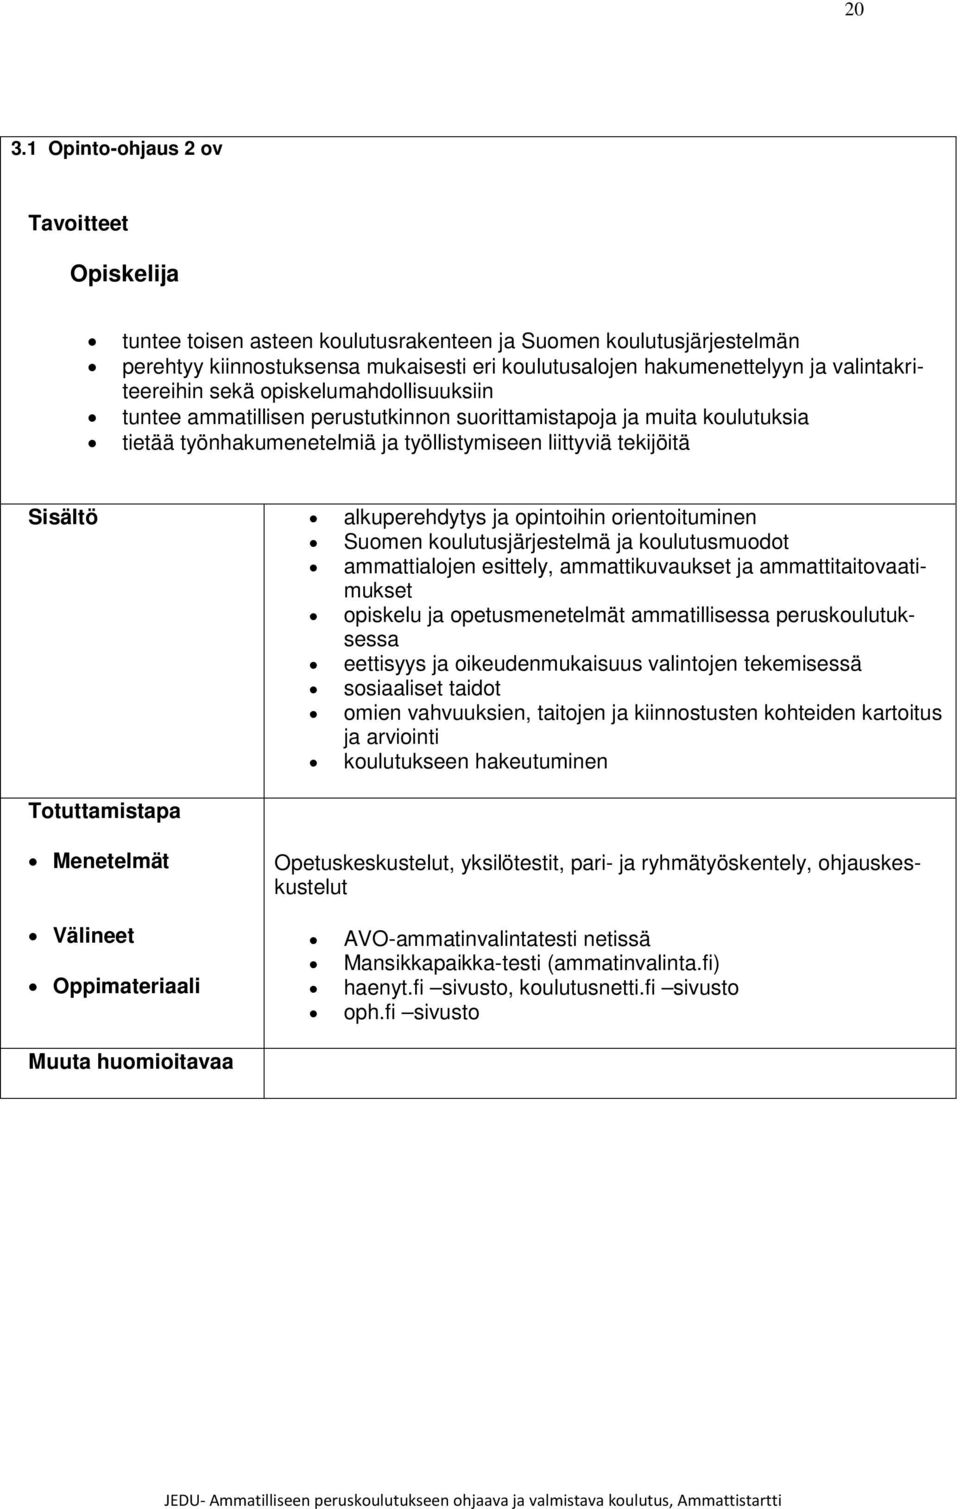 alkuperehdytys ja opintoihin orientoituminen Suomen koulutusjärjestelmä ja koulutusmuodot ammattialojen esittely, ammattikuvaukset ja ammattitaitovaatimukset opiskelu ja opetusmenetelmät